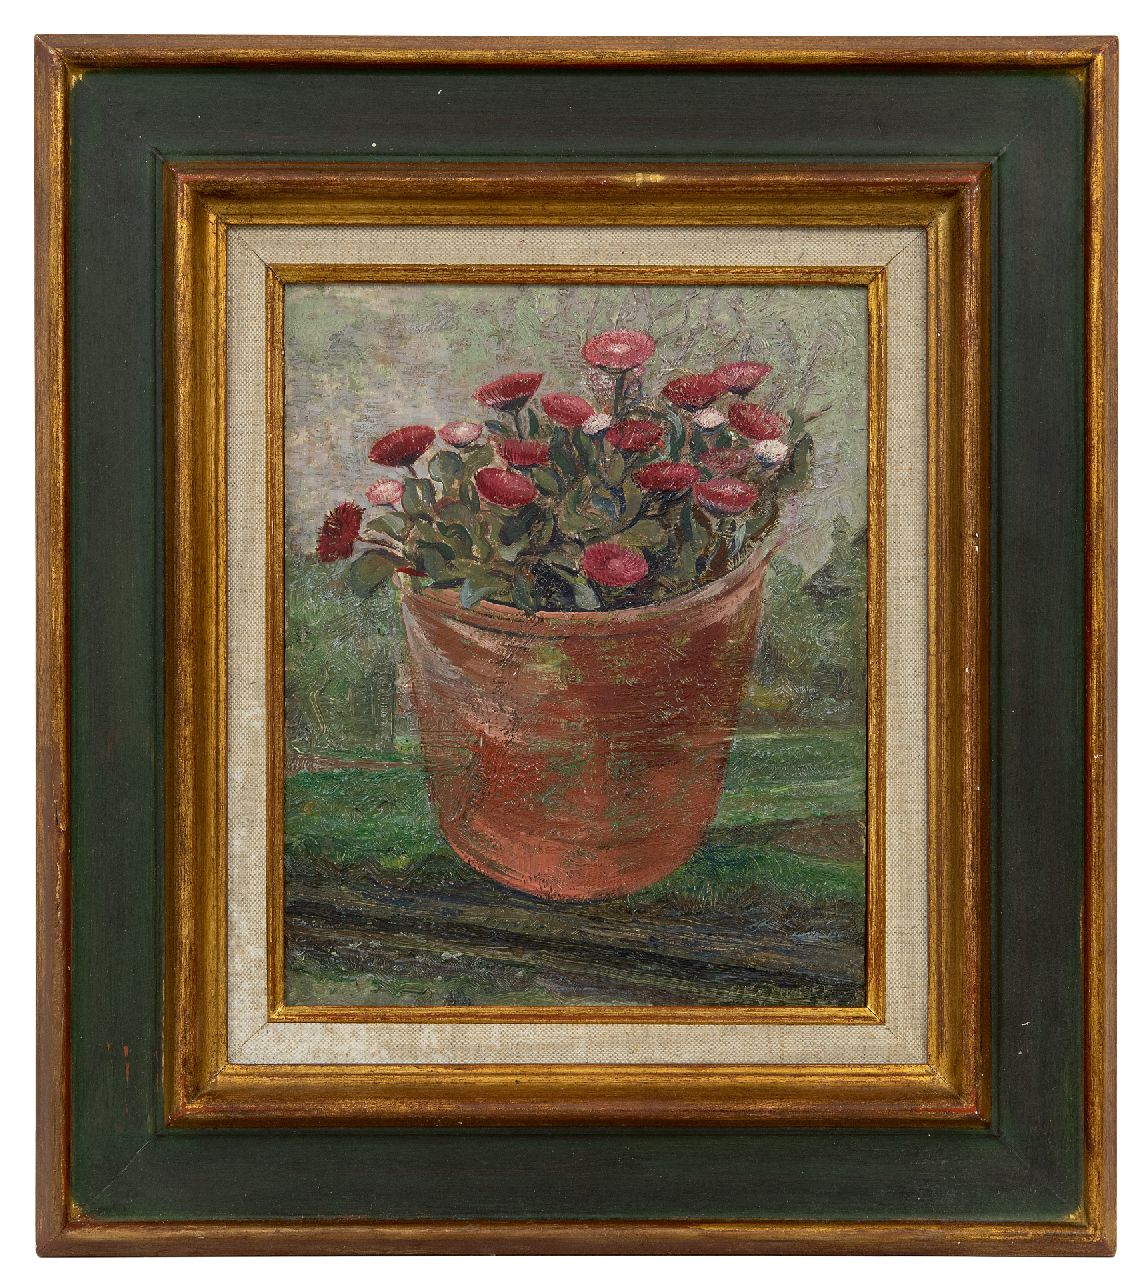 Zweep D.J. van der | 'Douwe' Jan van der Zweep | Schilderijen te koop aangeboden | Bloempot met madeliefjes, olieverf op paneel 27,0 x 21,1 cm, gesigneerd rechtsonder